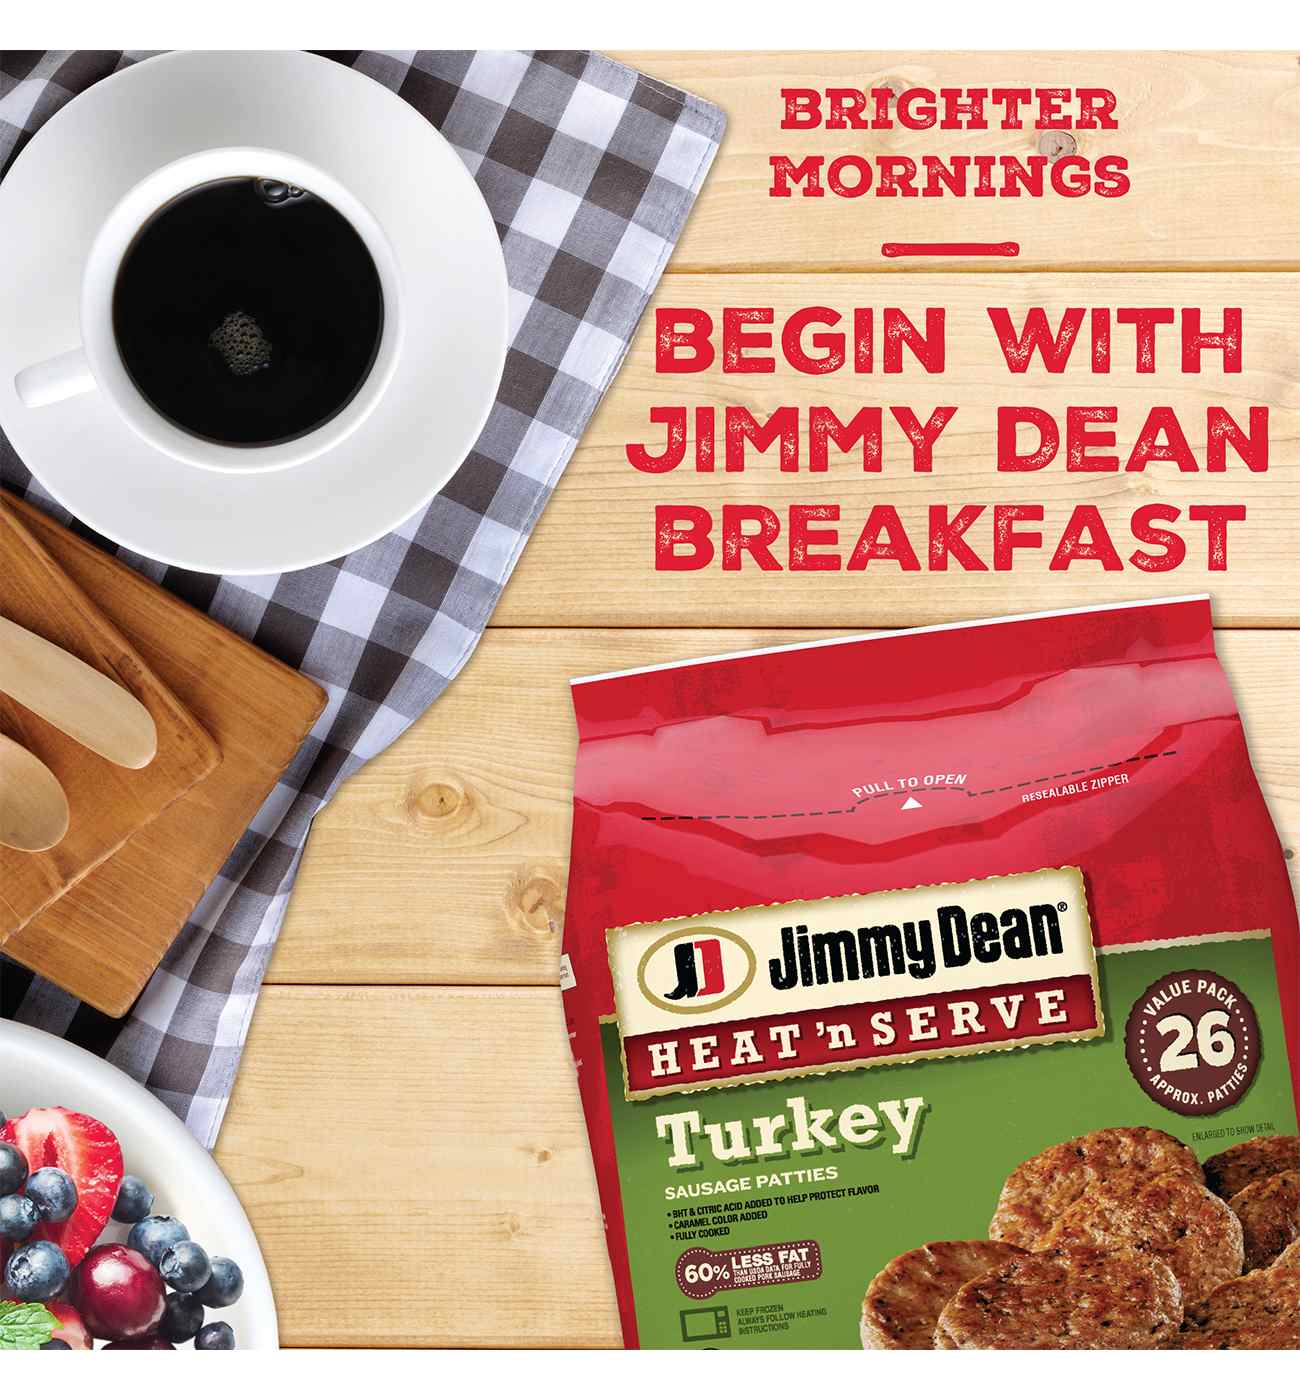 Jimmy Dean Heat 'n Serve Frozen Turkey Breakfast Sausage Patties, 26 ct; image 4 of 5